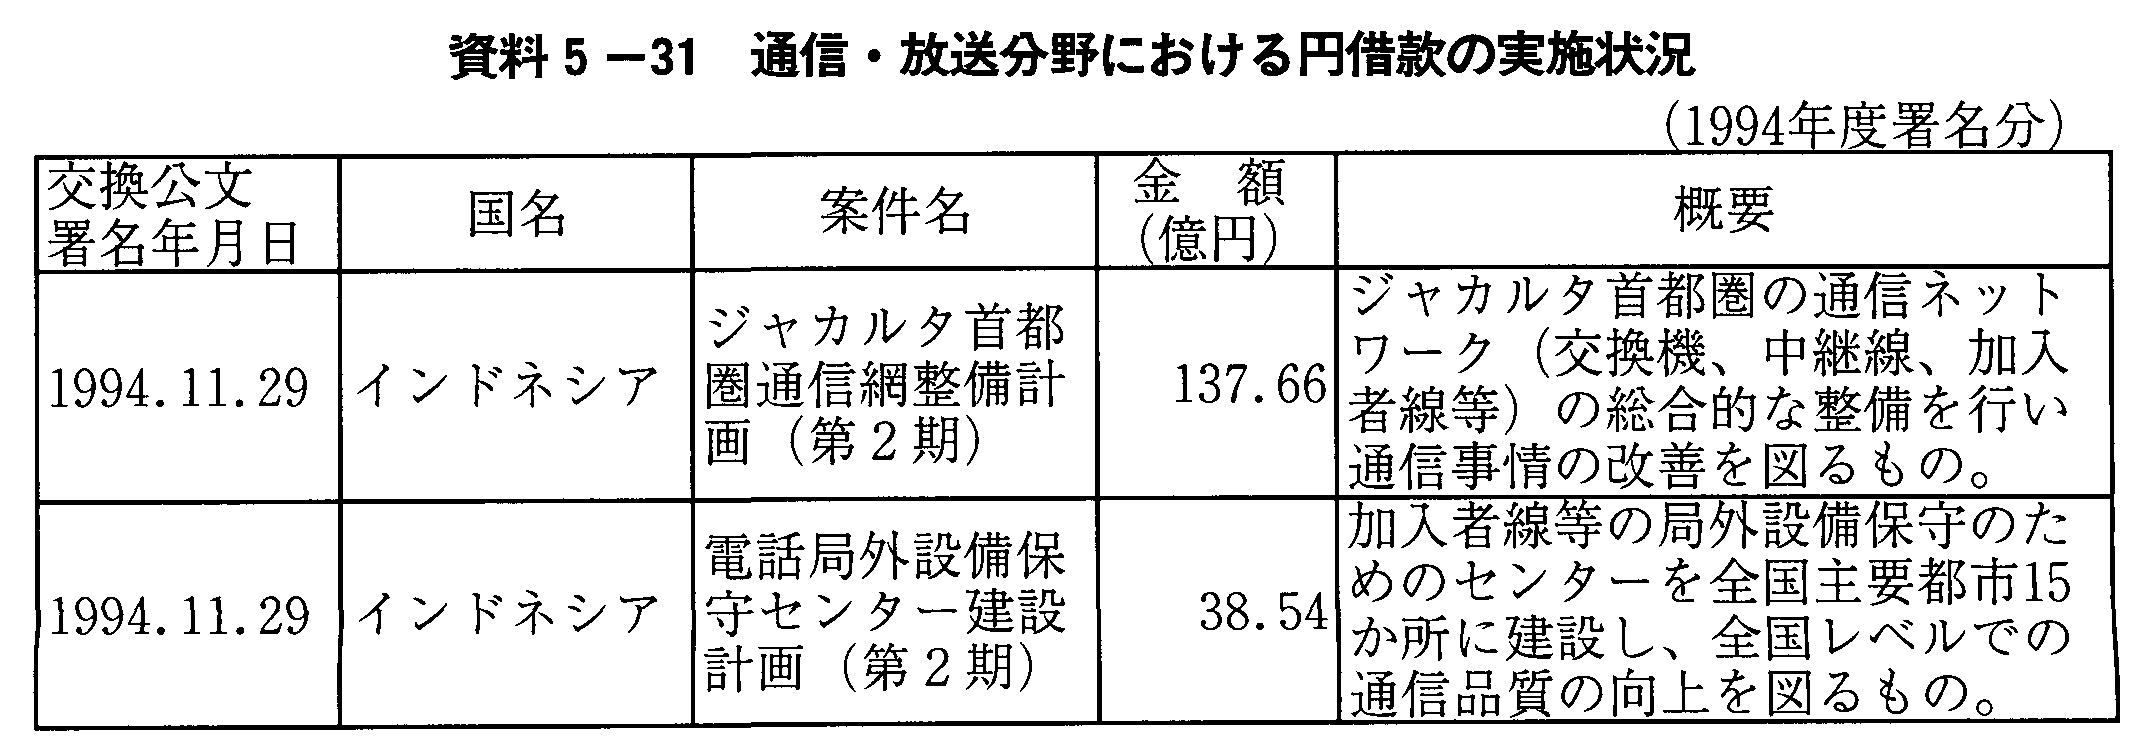 資料5-31 通信・放送分野における円借款の実施状況(1994年度署名分)